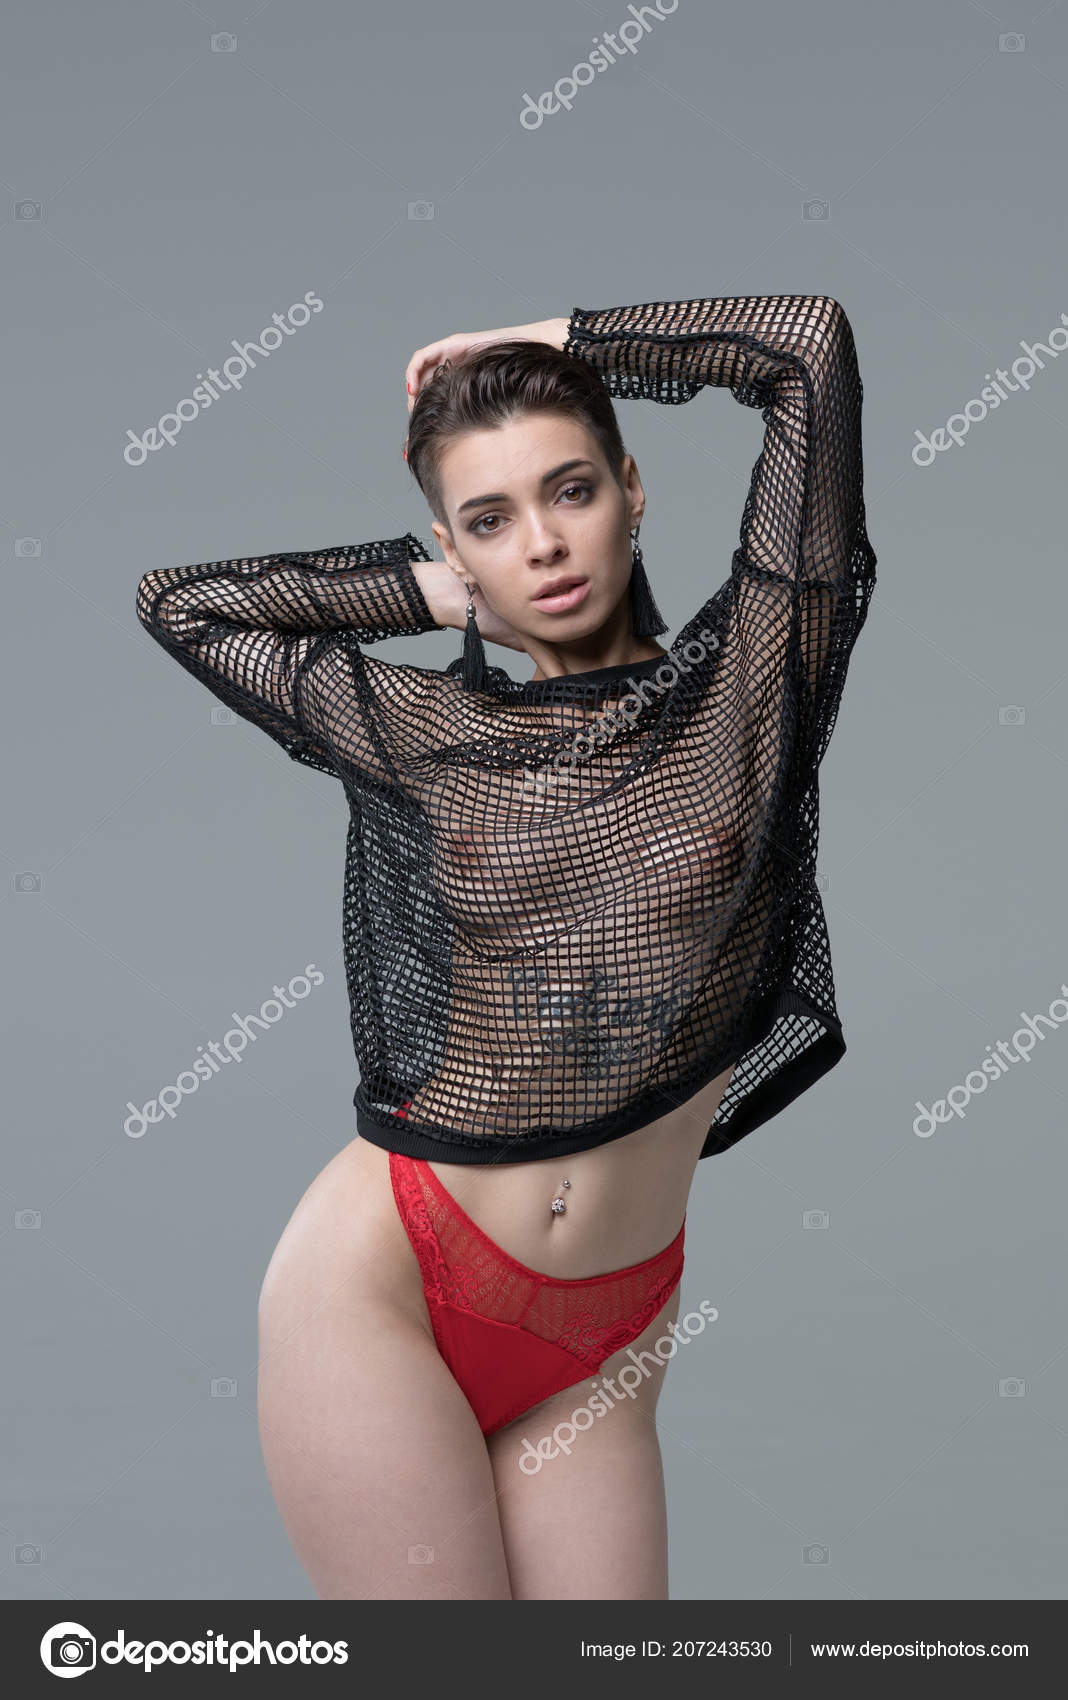 https://st4n.depositphotos.com/10086424/20724/i/1600/depositphotos_207243530-stock-photo-young-beautiful-girl-posing-studio.jpg